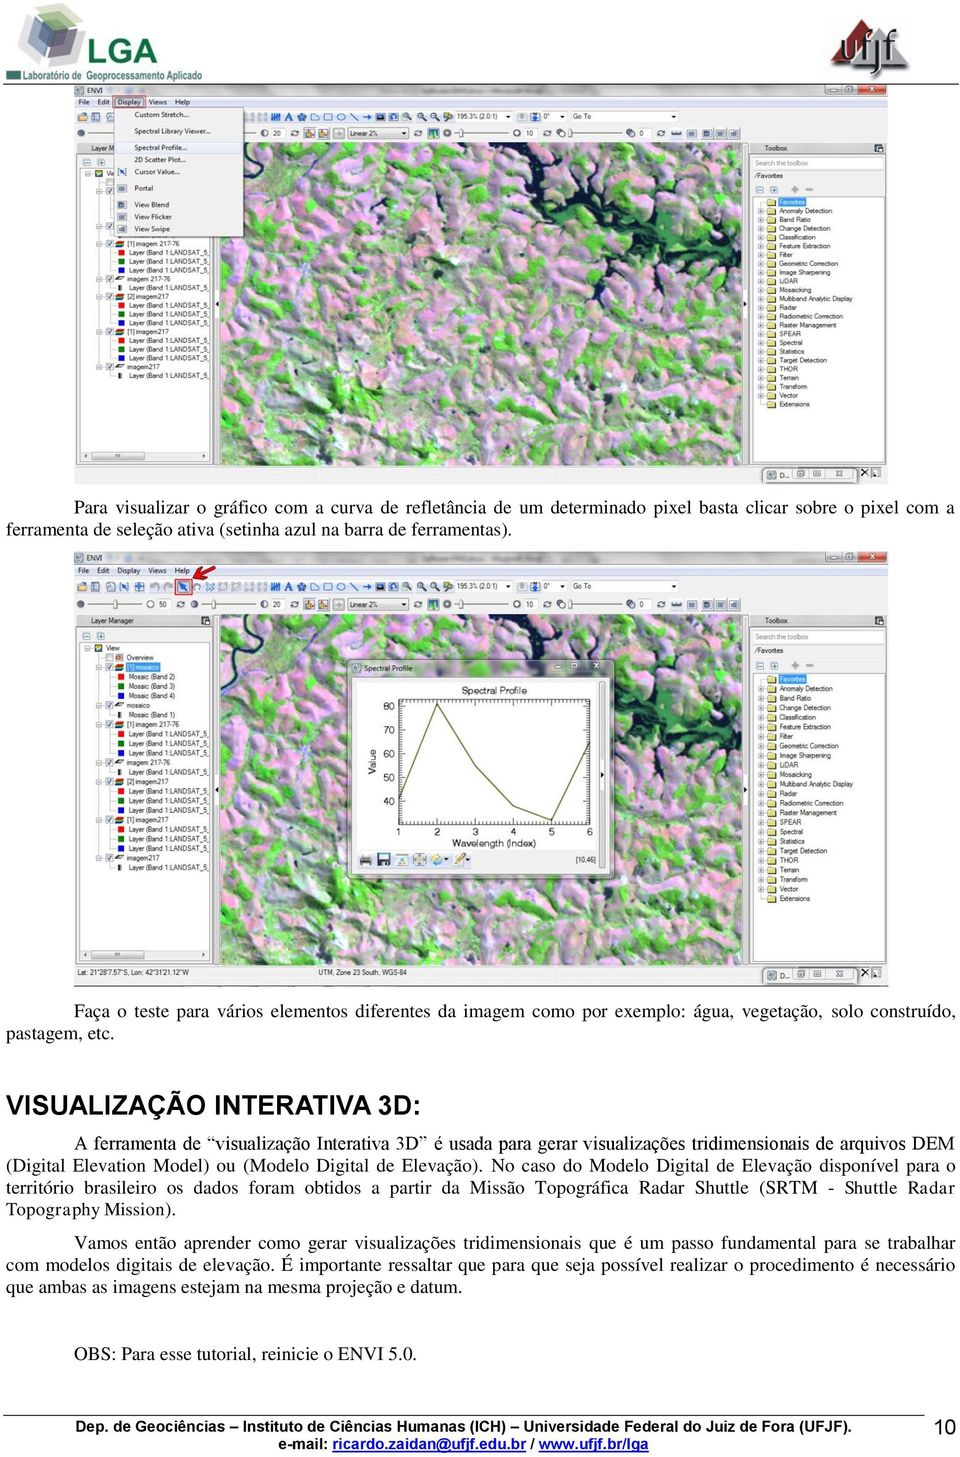 VISUALIZAÇÃO INTERATIVA 3D: A ferramenta de visualização Interativa 3D é usada para gerar visualizações tridimensionais de arquivos DEM (Digital Elevation Model) ou (Modelo Digital de Elevação).